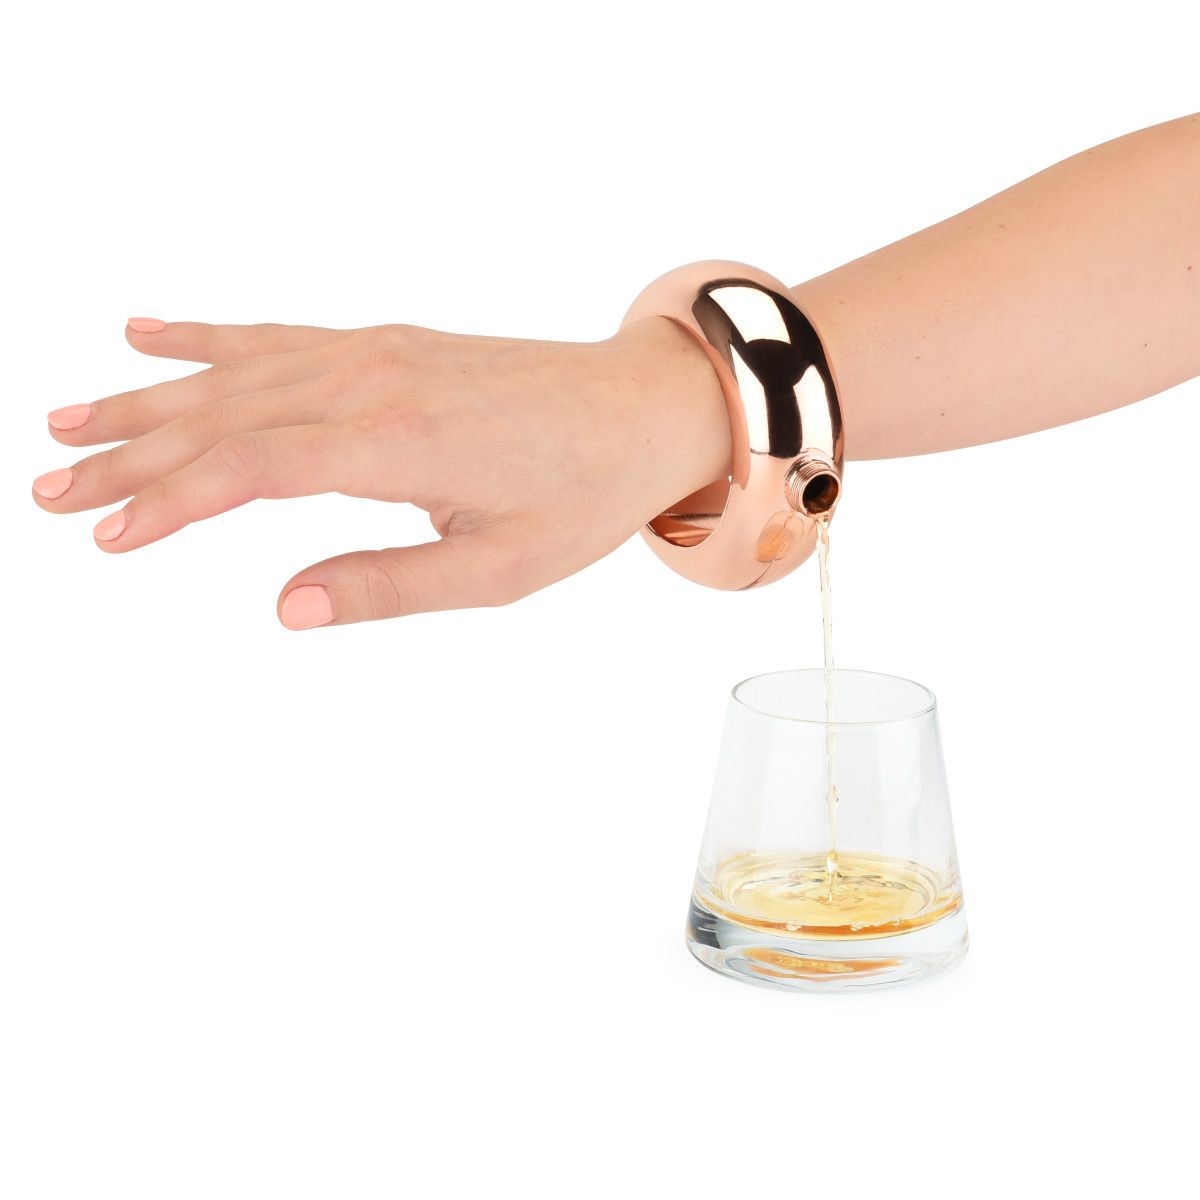 Booze Smuggle Bracelet Bangle Hip Flask Alcohol Drink Festival Jewellery  Gift | eBay